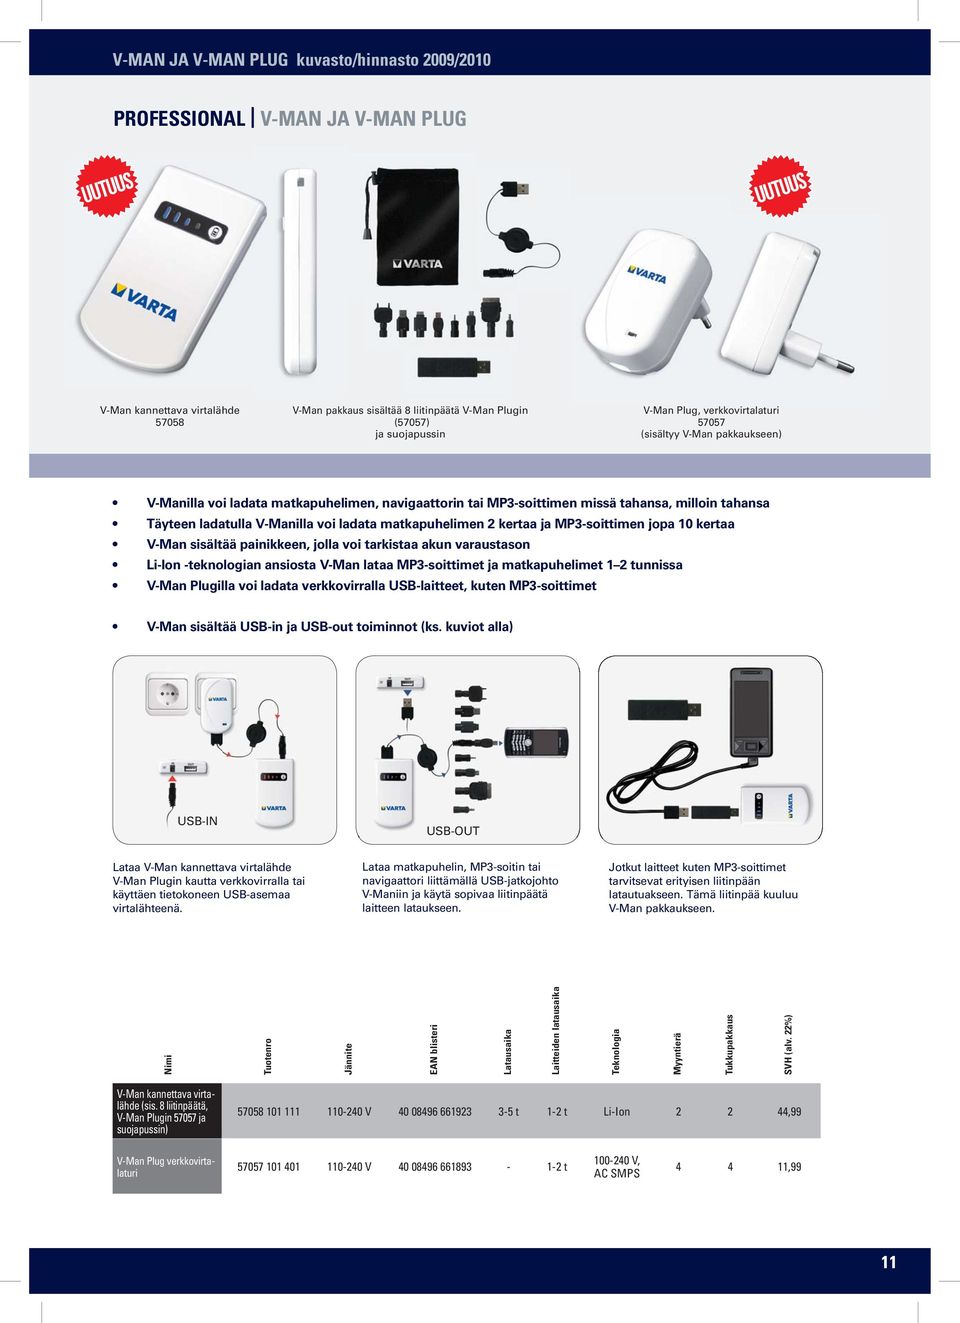 matkapuhelimen 2 kertaa ja MP3-soittimen jopa 10 kertaa V-Man sisältää painikkeen, jolla voi tarkistaa akun varaustason Li-Ion -teknologian ansiosta V-Man lataa MP3-soittimet ja matkapuhelimet 1 2